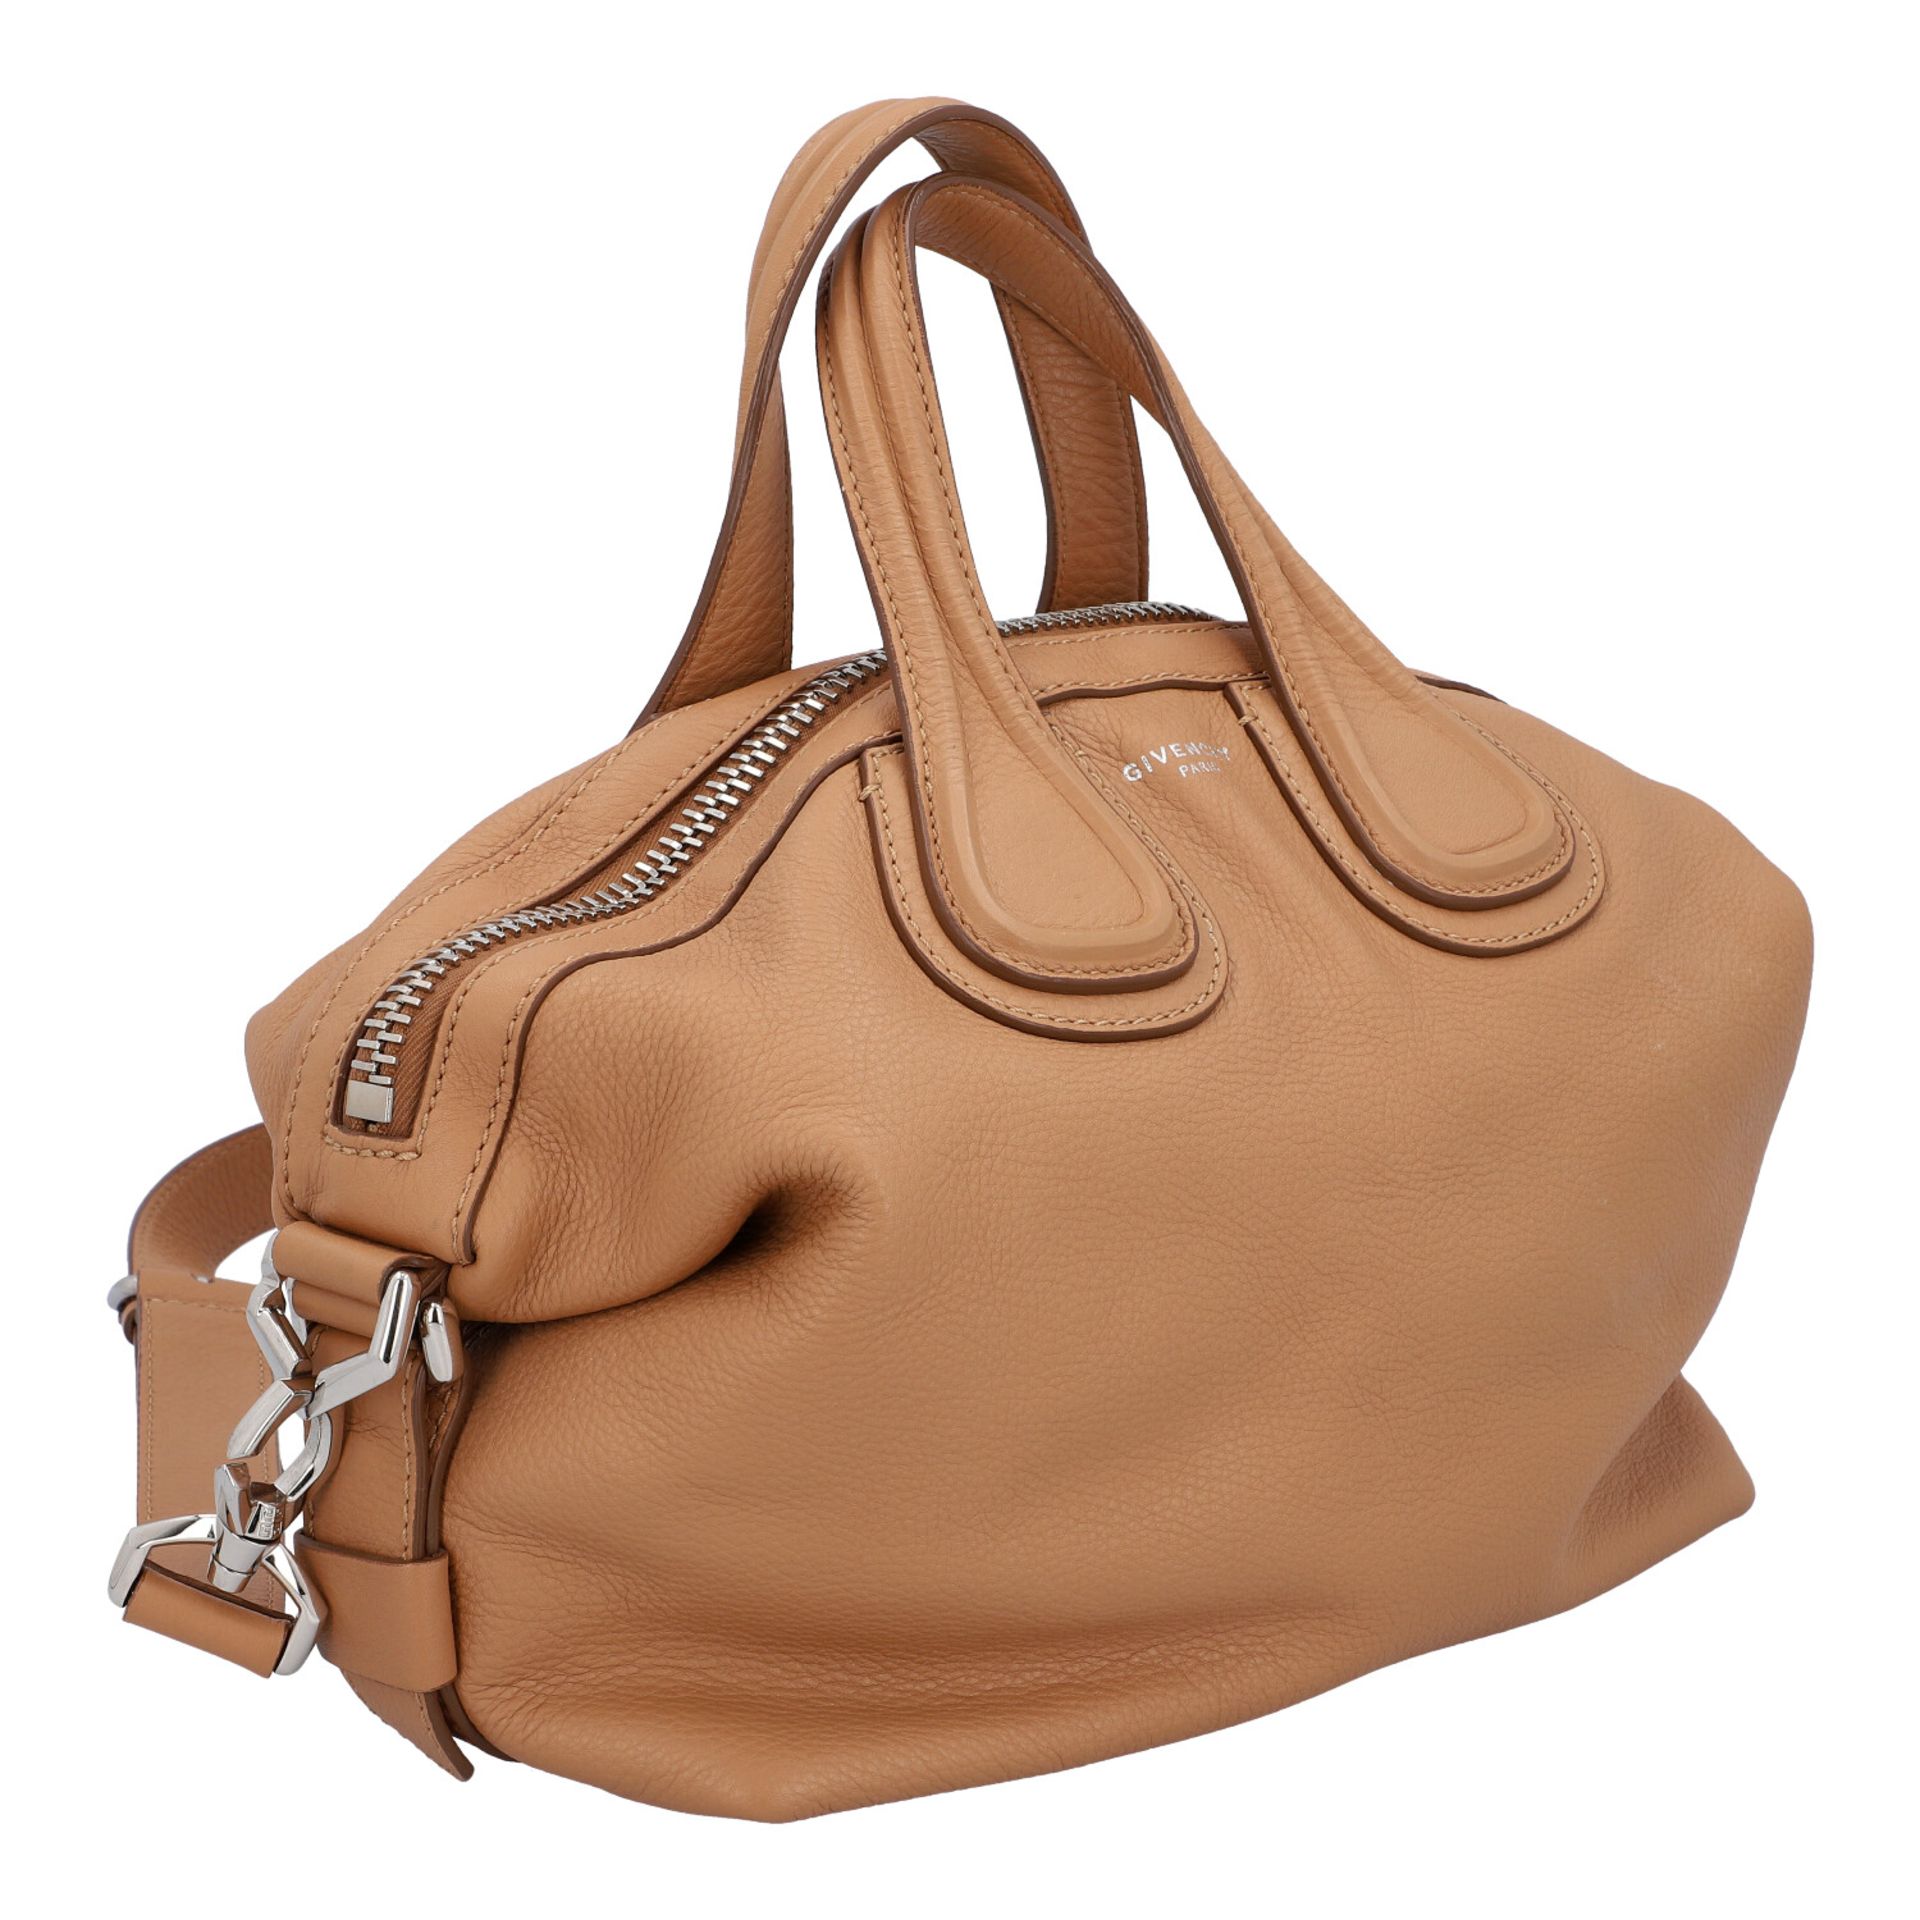 GIVENCHY Handtasche "NIGHTINGALE".Tote Bag in Beige mit silberfarbener Hardware, dekor - Bild 2 aus 8